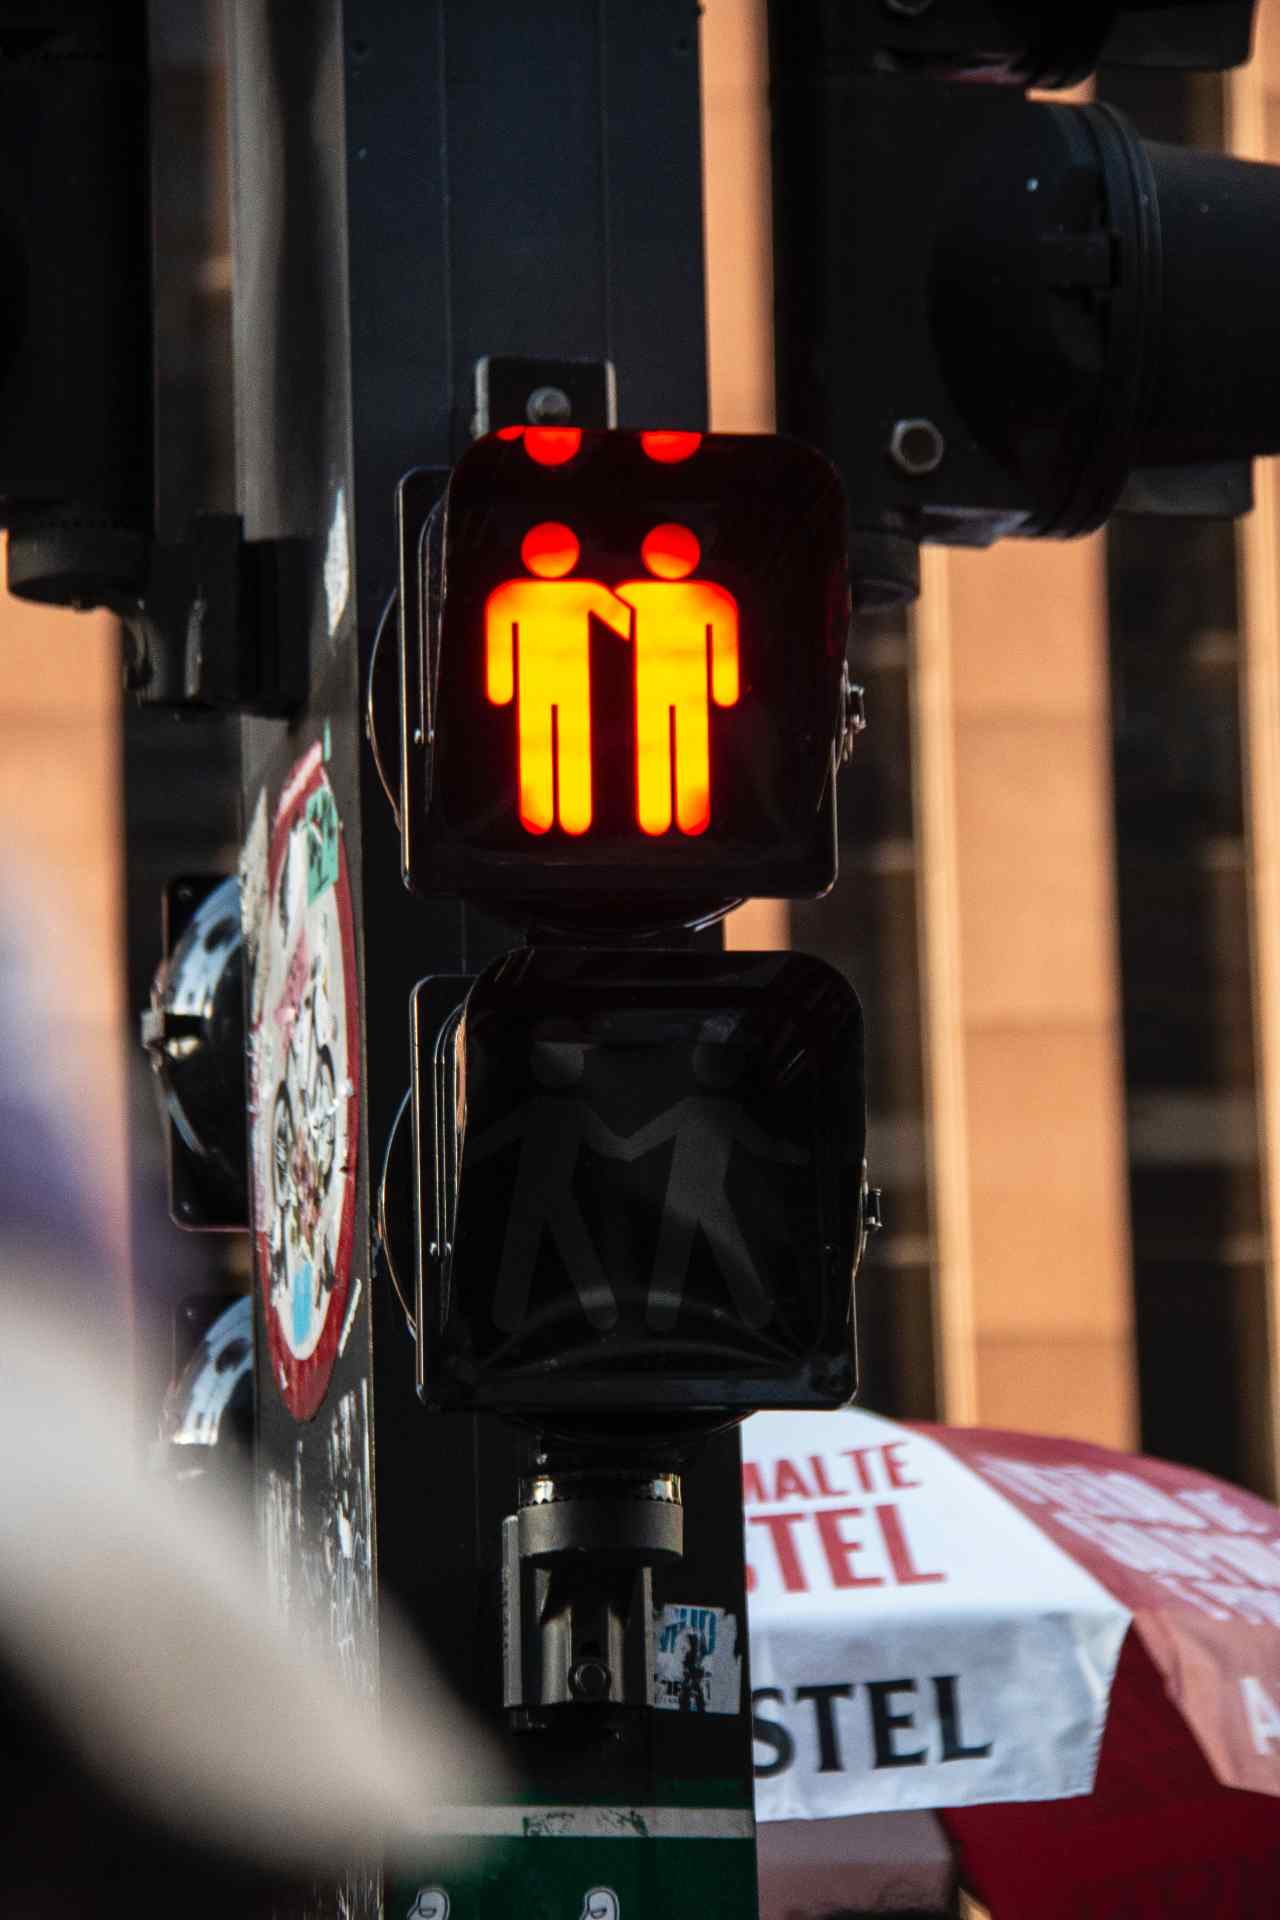 dos monigotes personas siluetas rojas semaforo luz roja no pasar calle